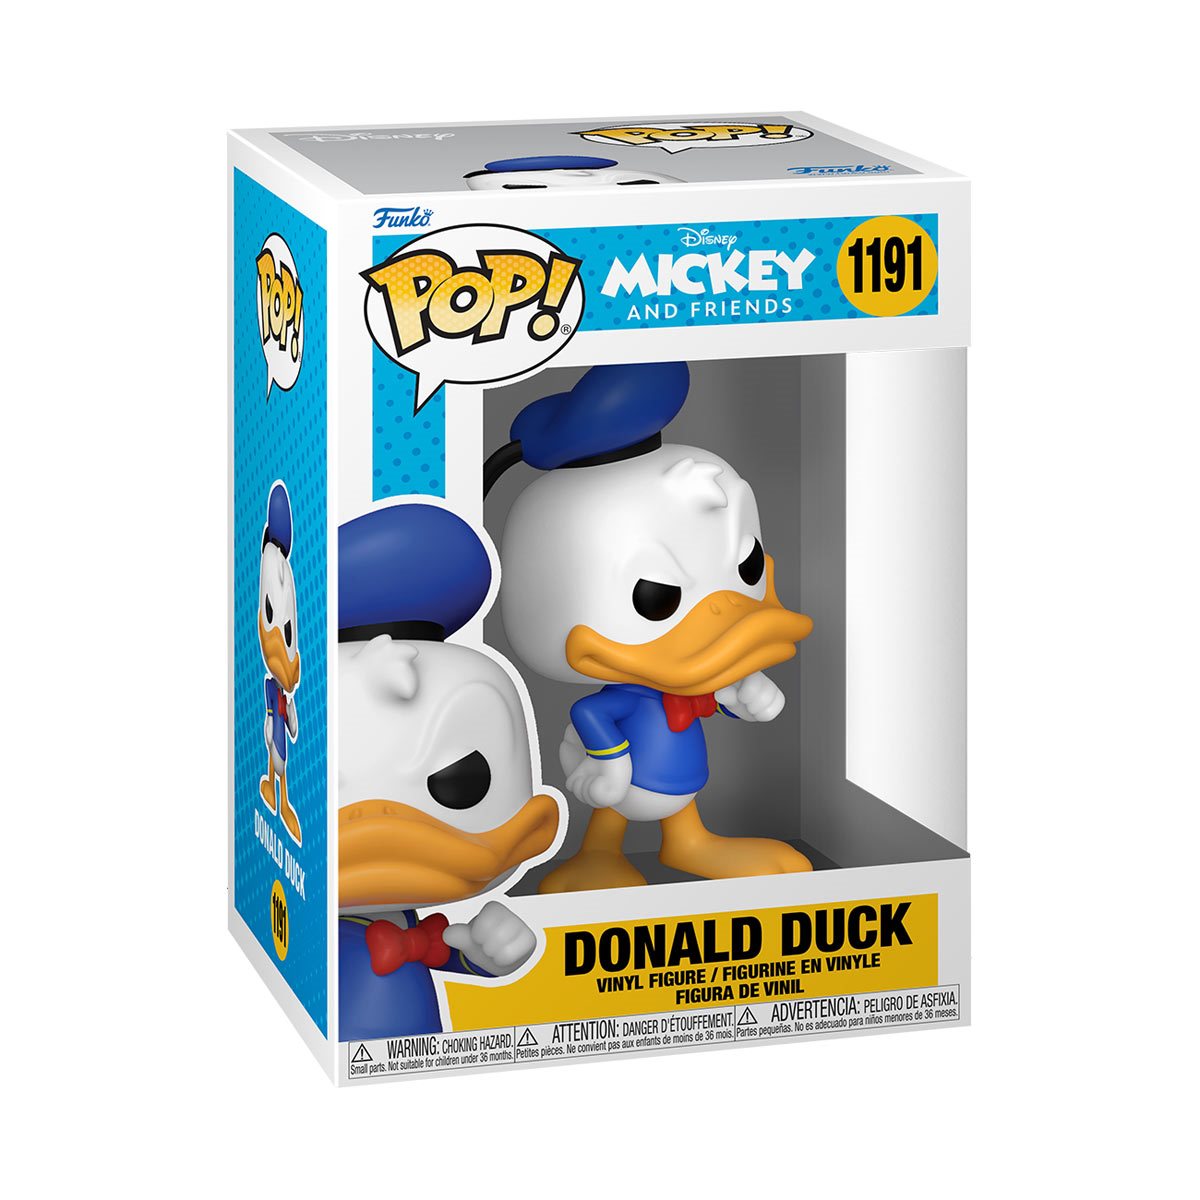 POP! Disney Classics Donald Duck #1191